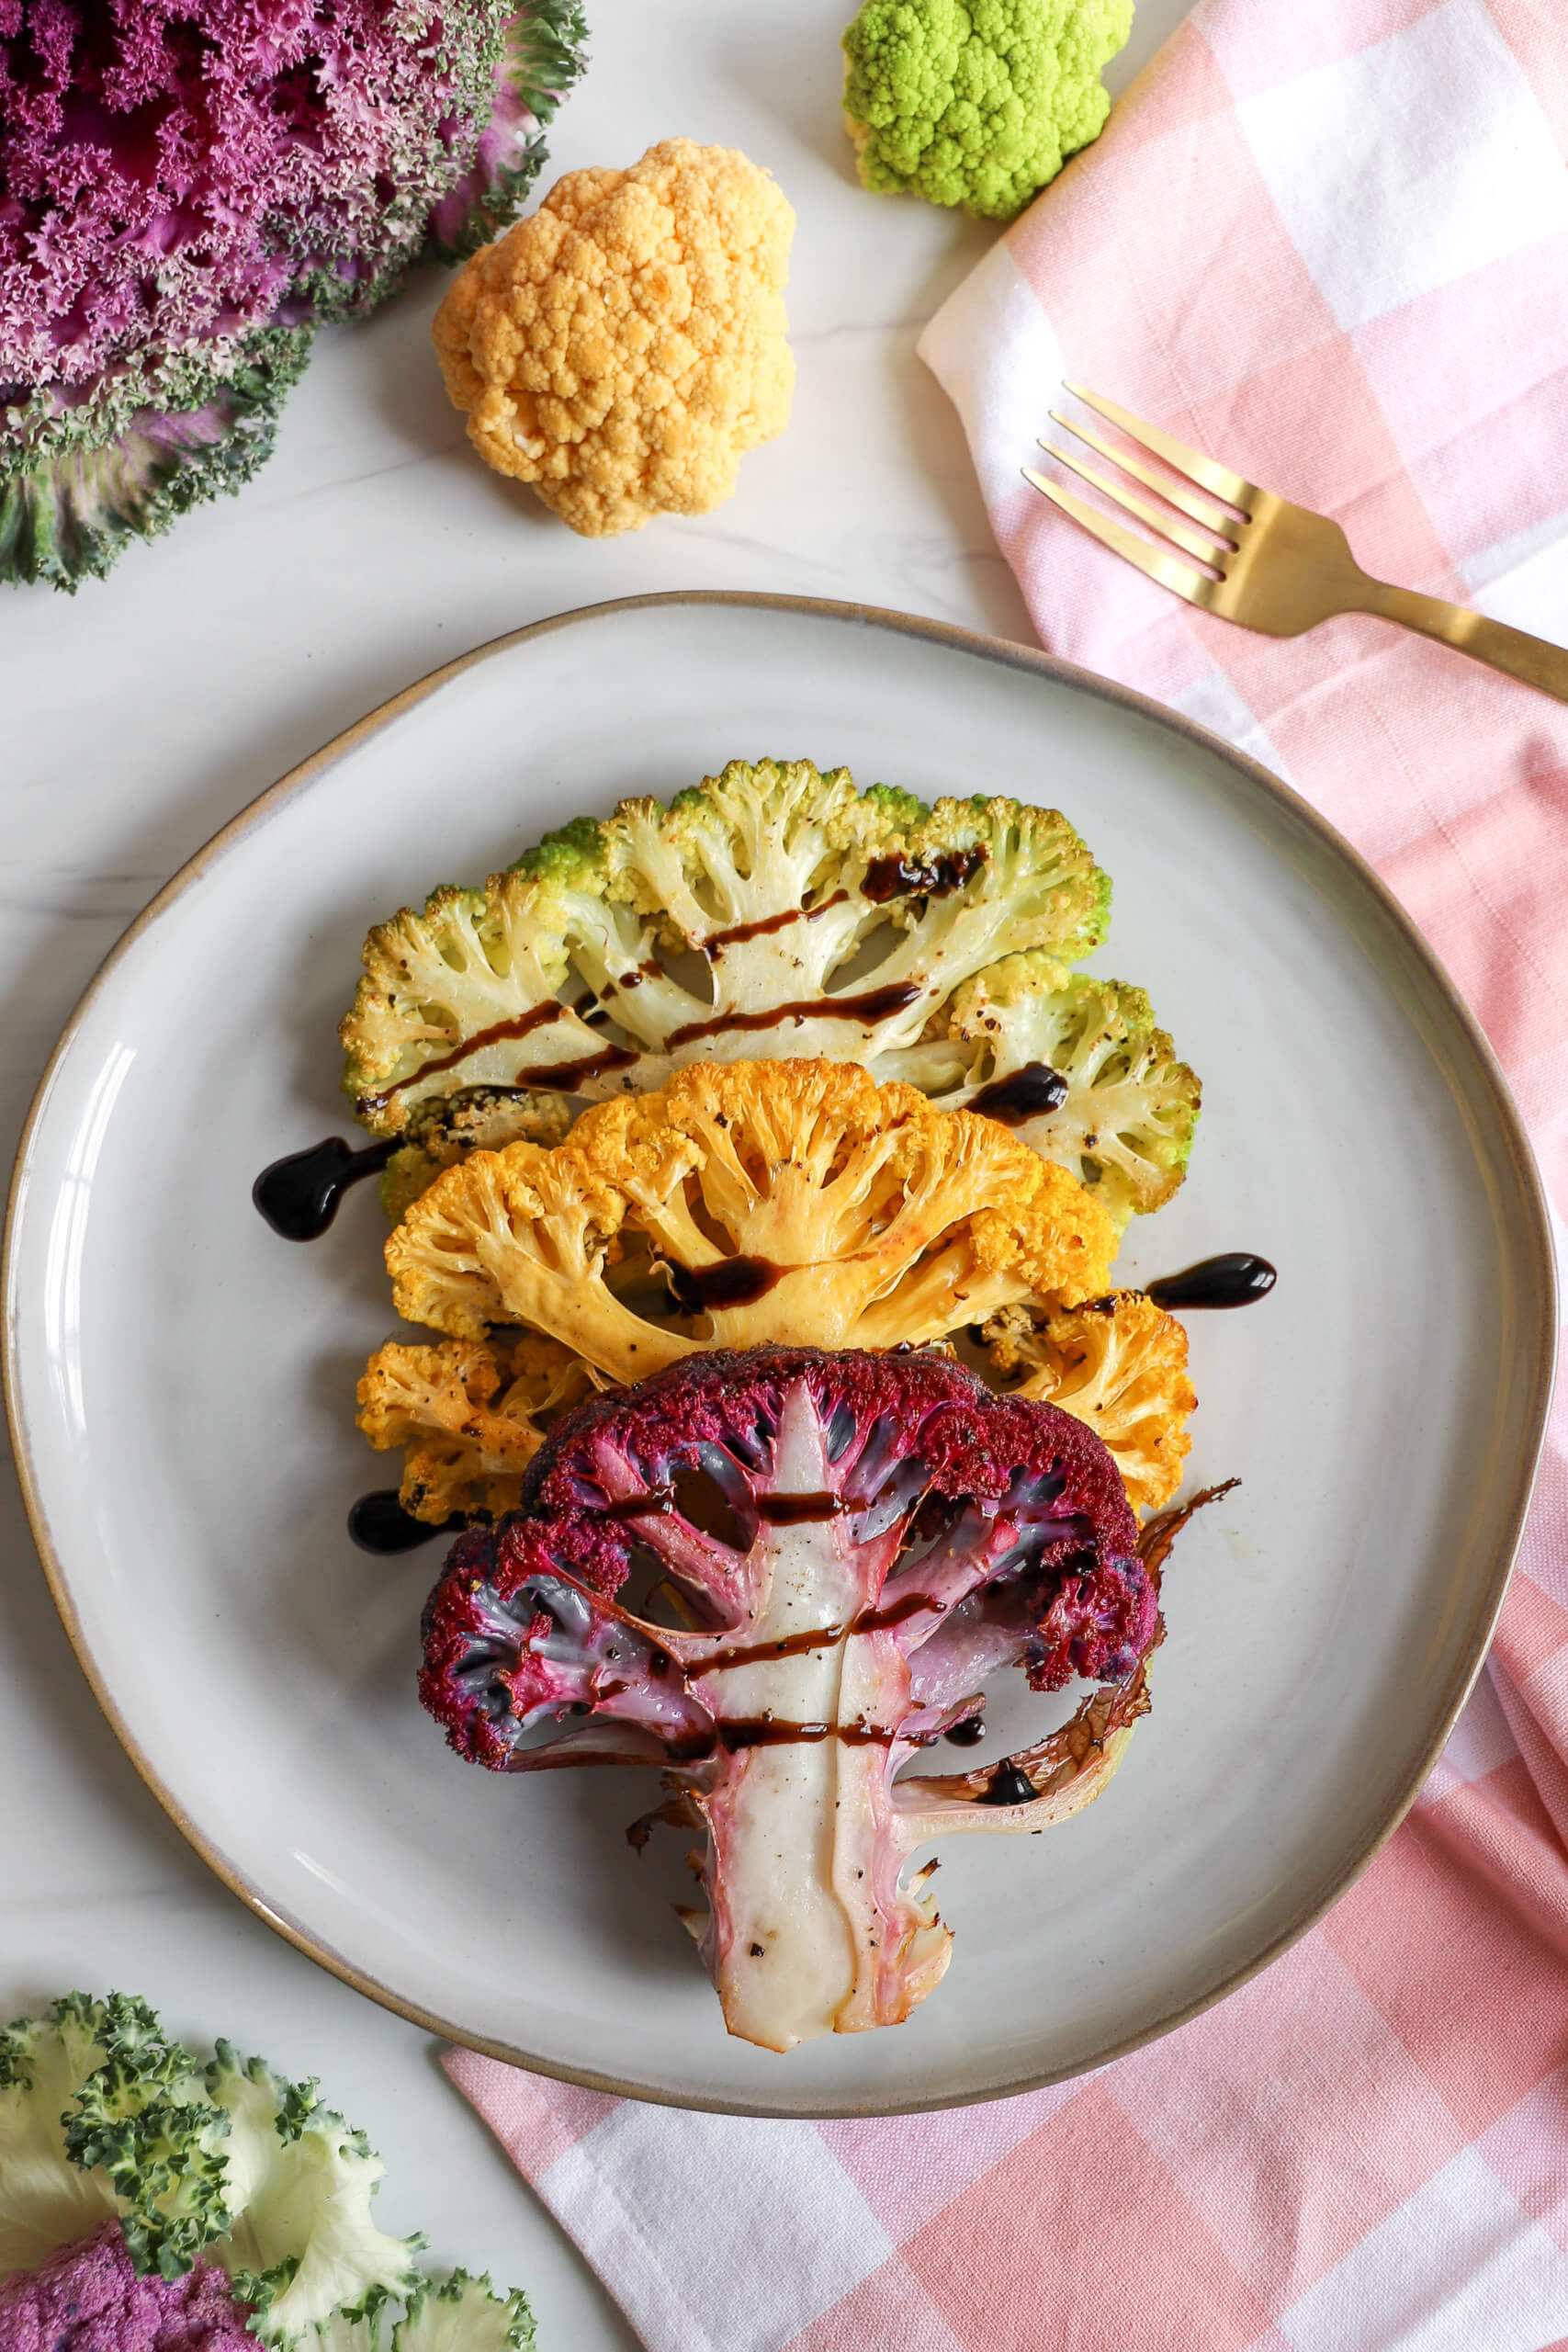 Roasted Multi-Color Cauliflower Steaks